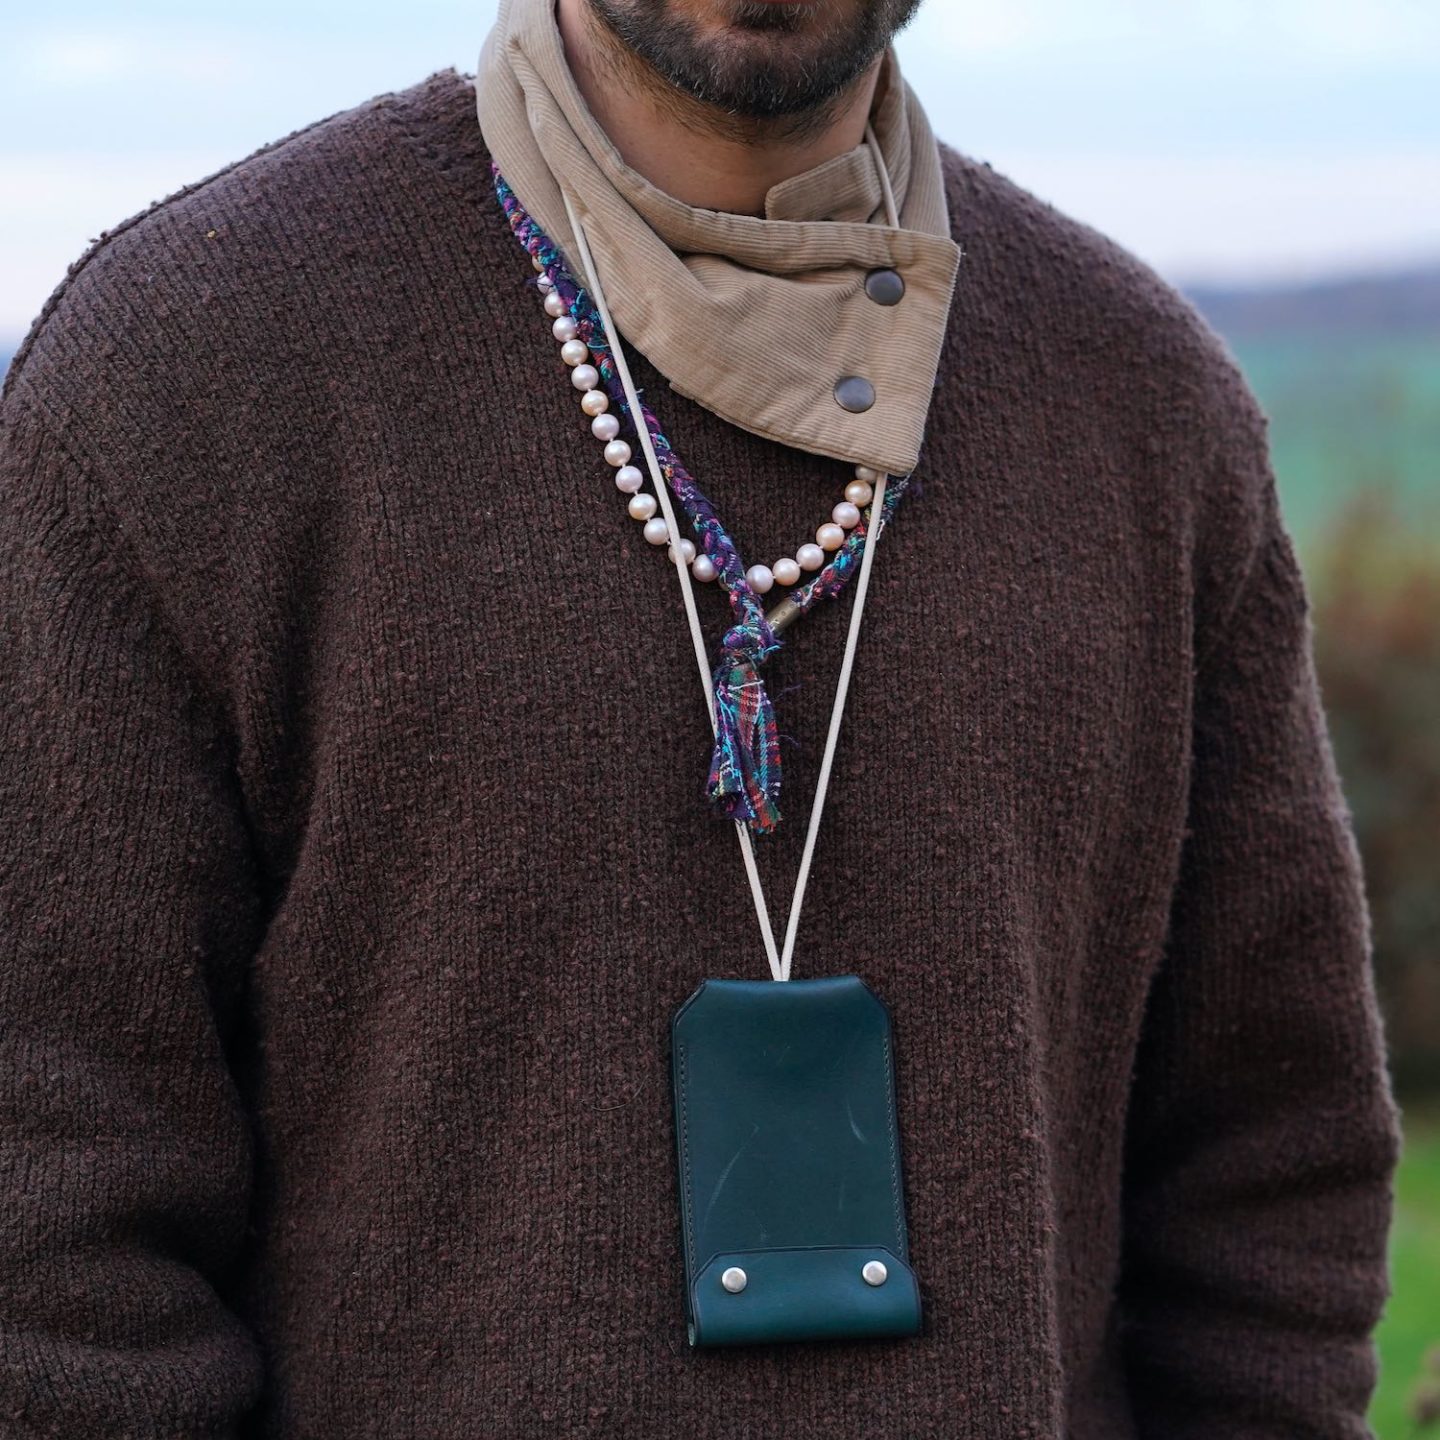 collier en tissu Borali et porte-clé-carte en cuir laperruque by Boras